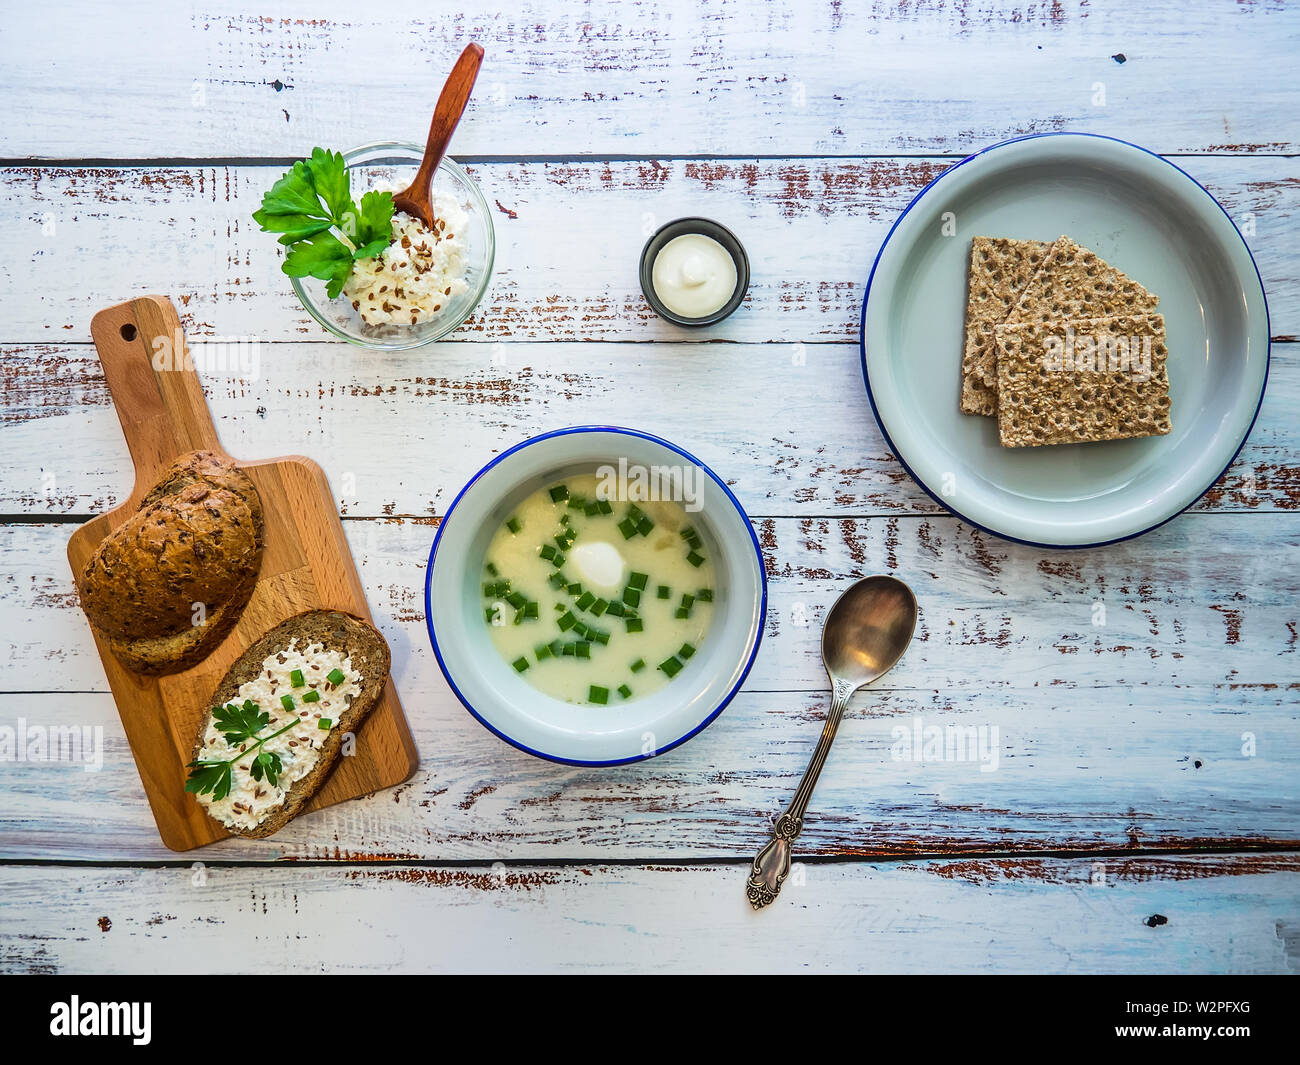 Abendessen auf einem rustikalen Holztisch: eine Schüssel mit Suppe mit grünen Zwiebeln, Vollkornbrot auf einem Schneidebrett und frische Brot auf den Teller. Stockfoto